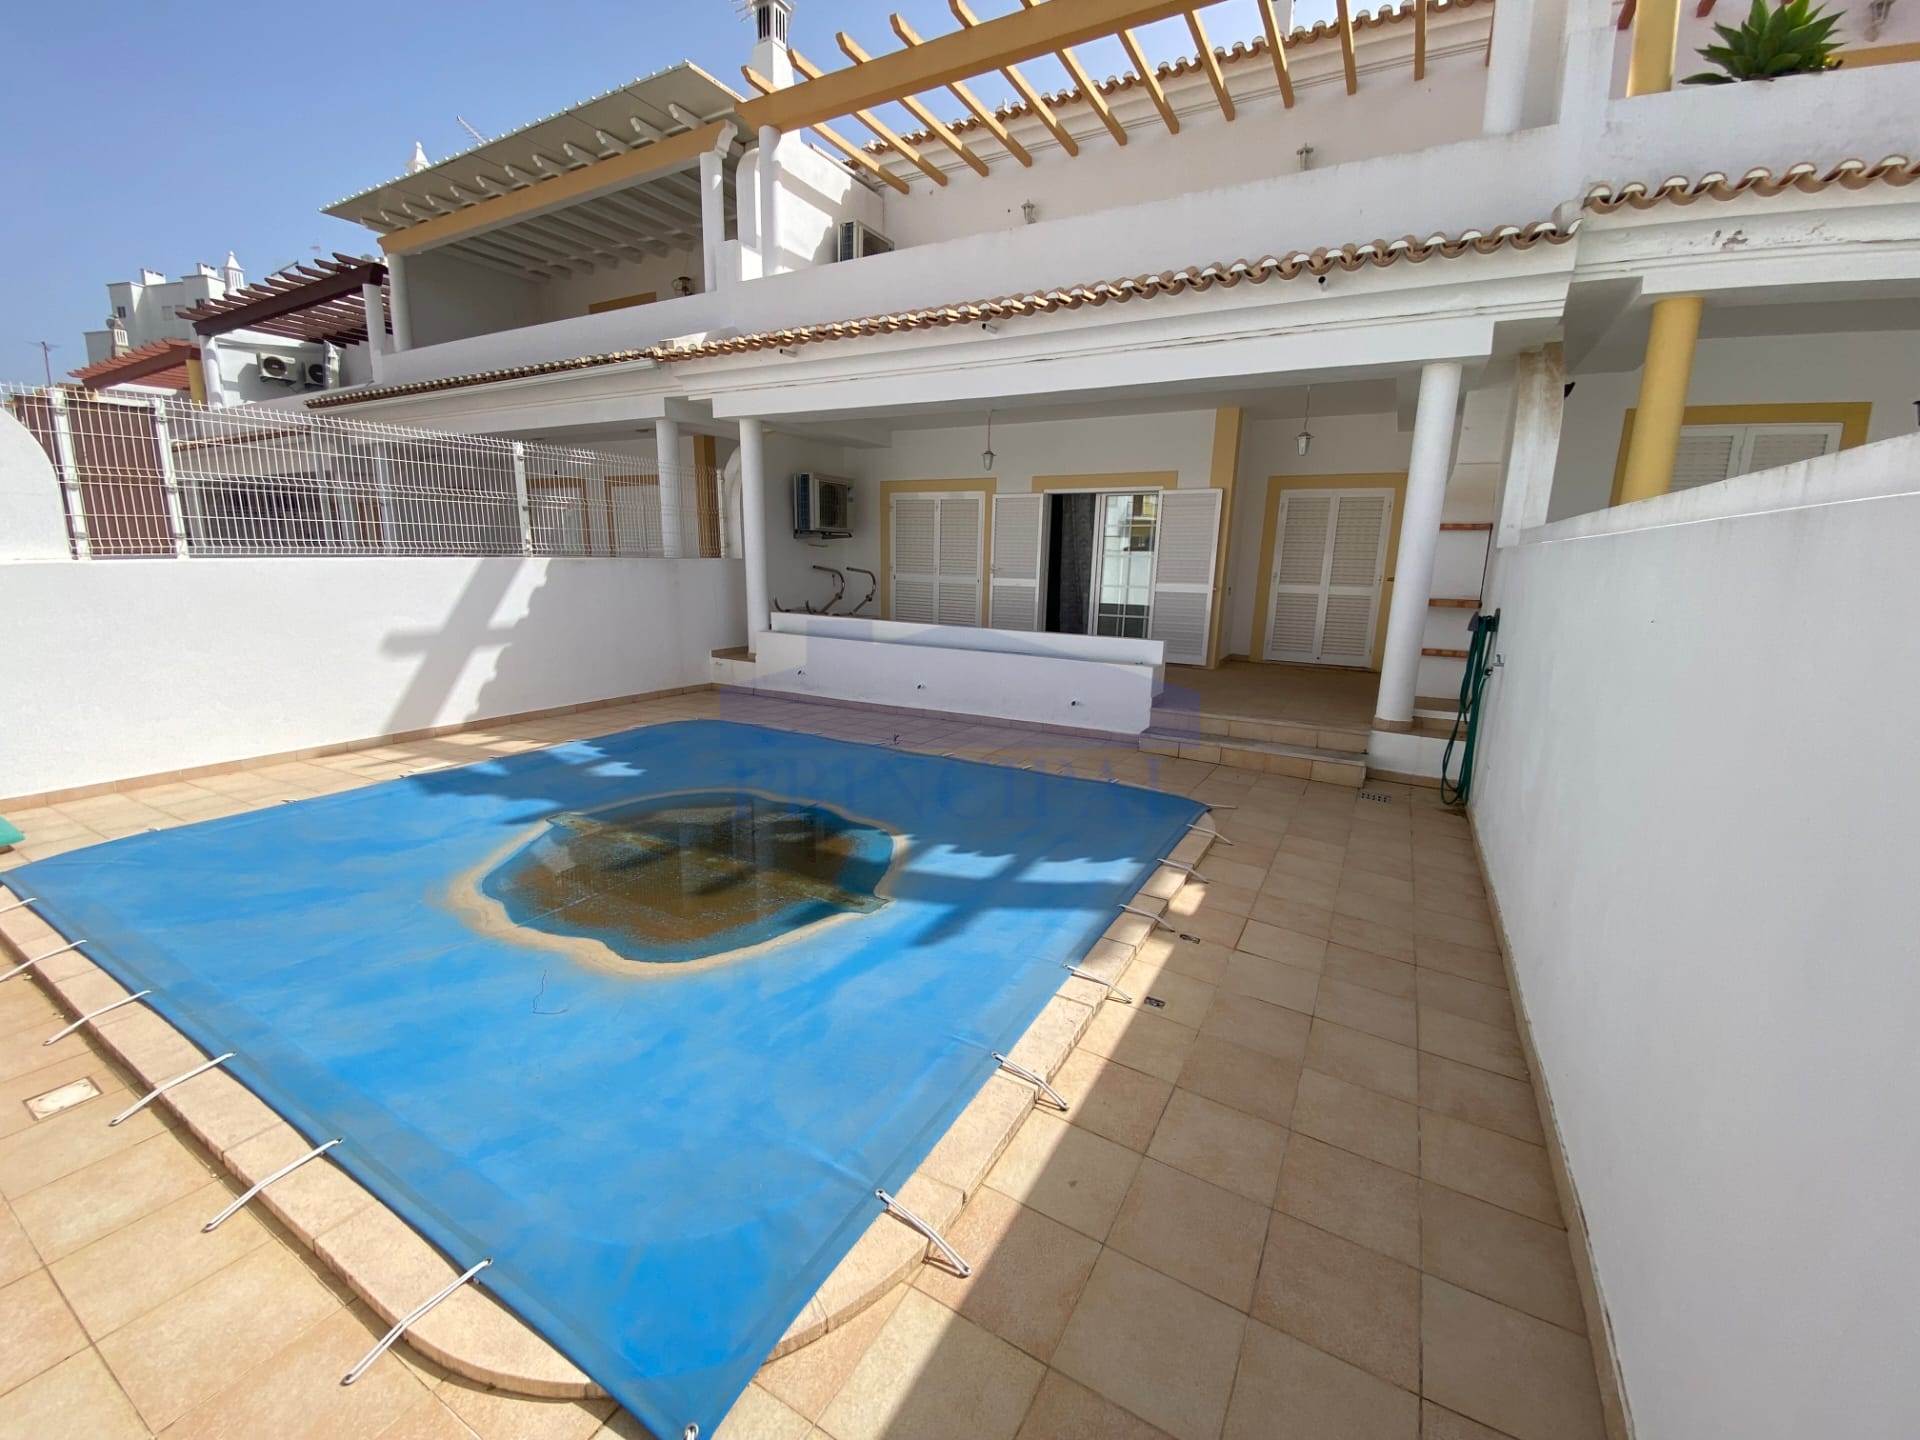 Maison de ville V3 +1 avec piscine privée à 600m de la plage d’Armação de Pêra